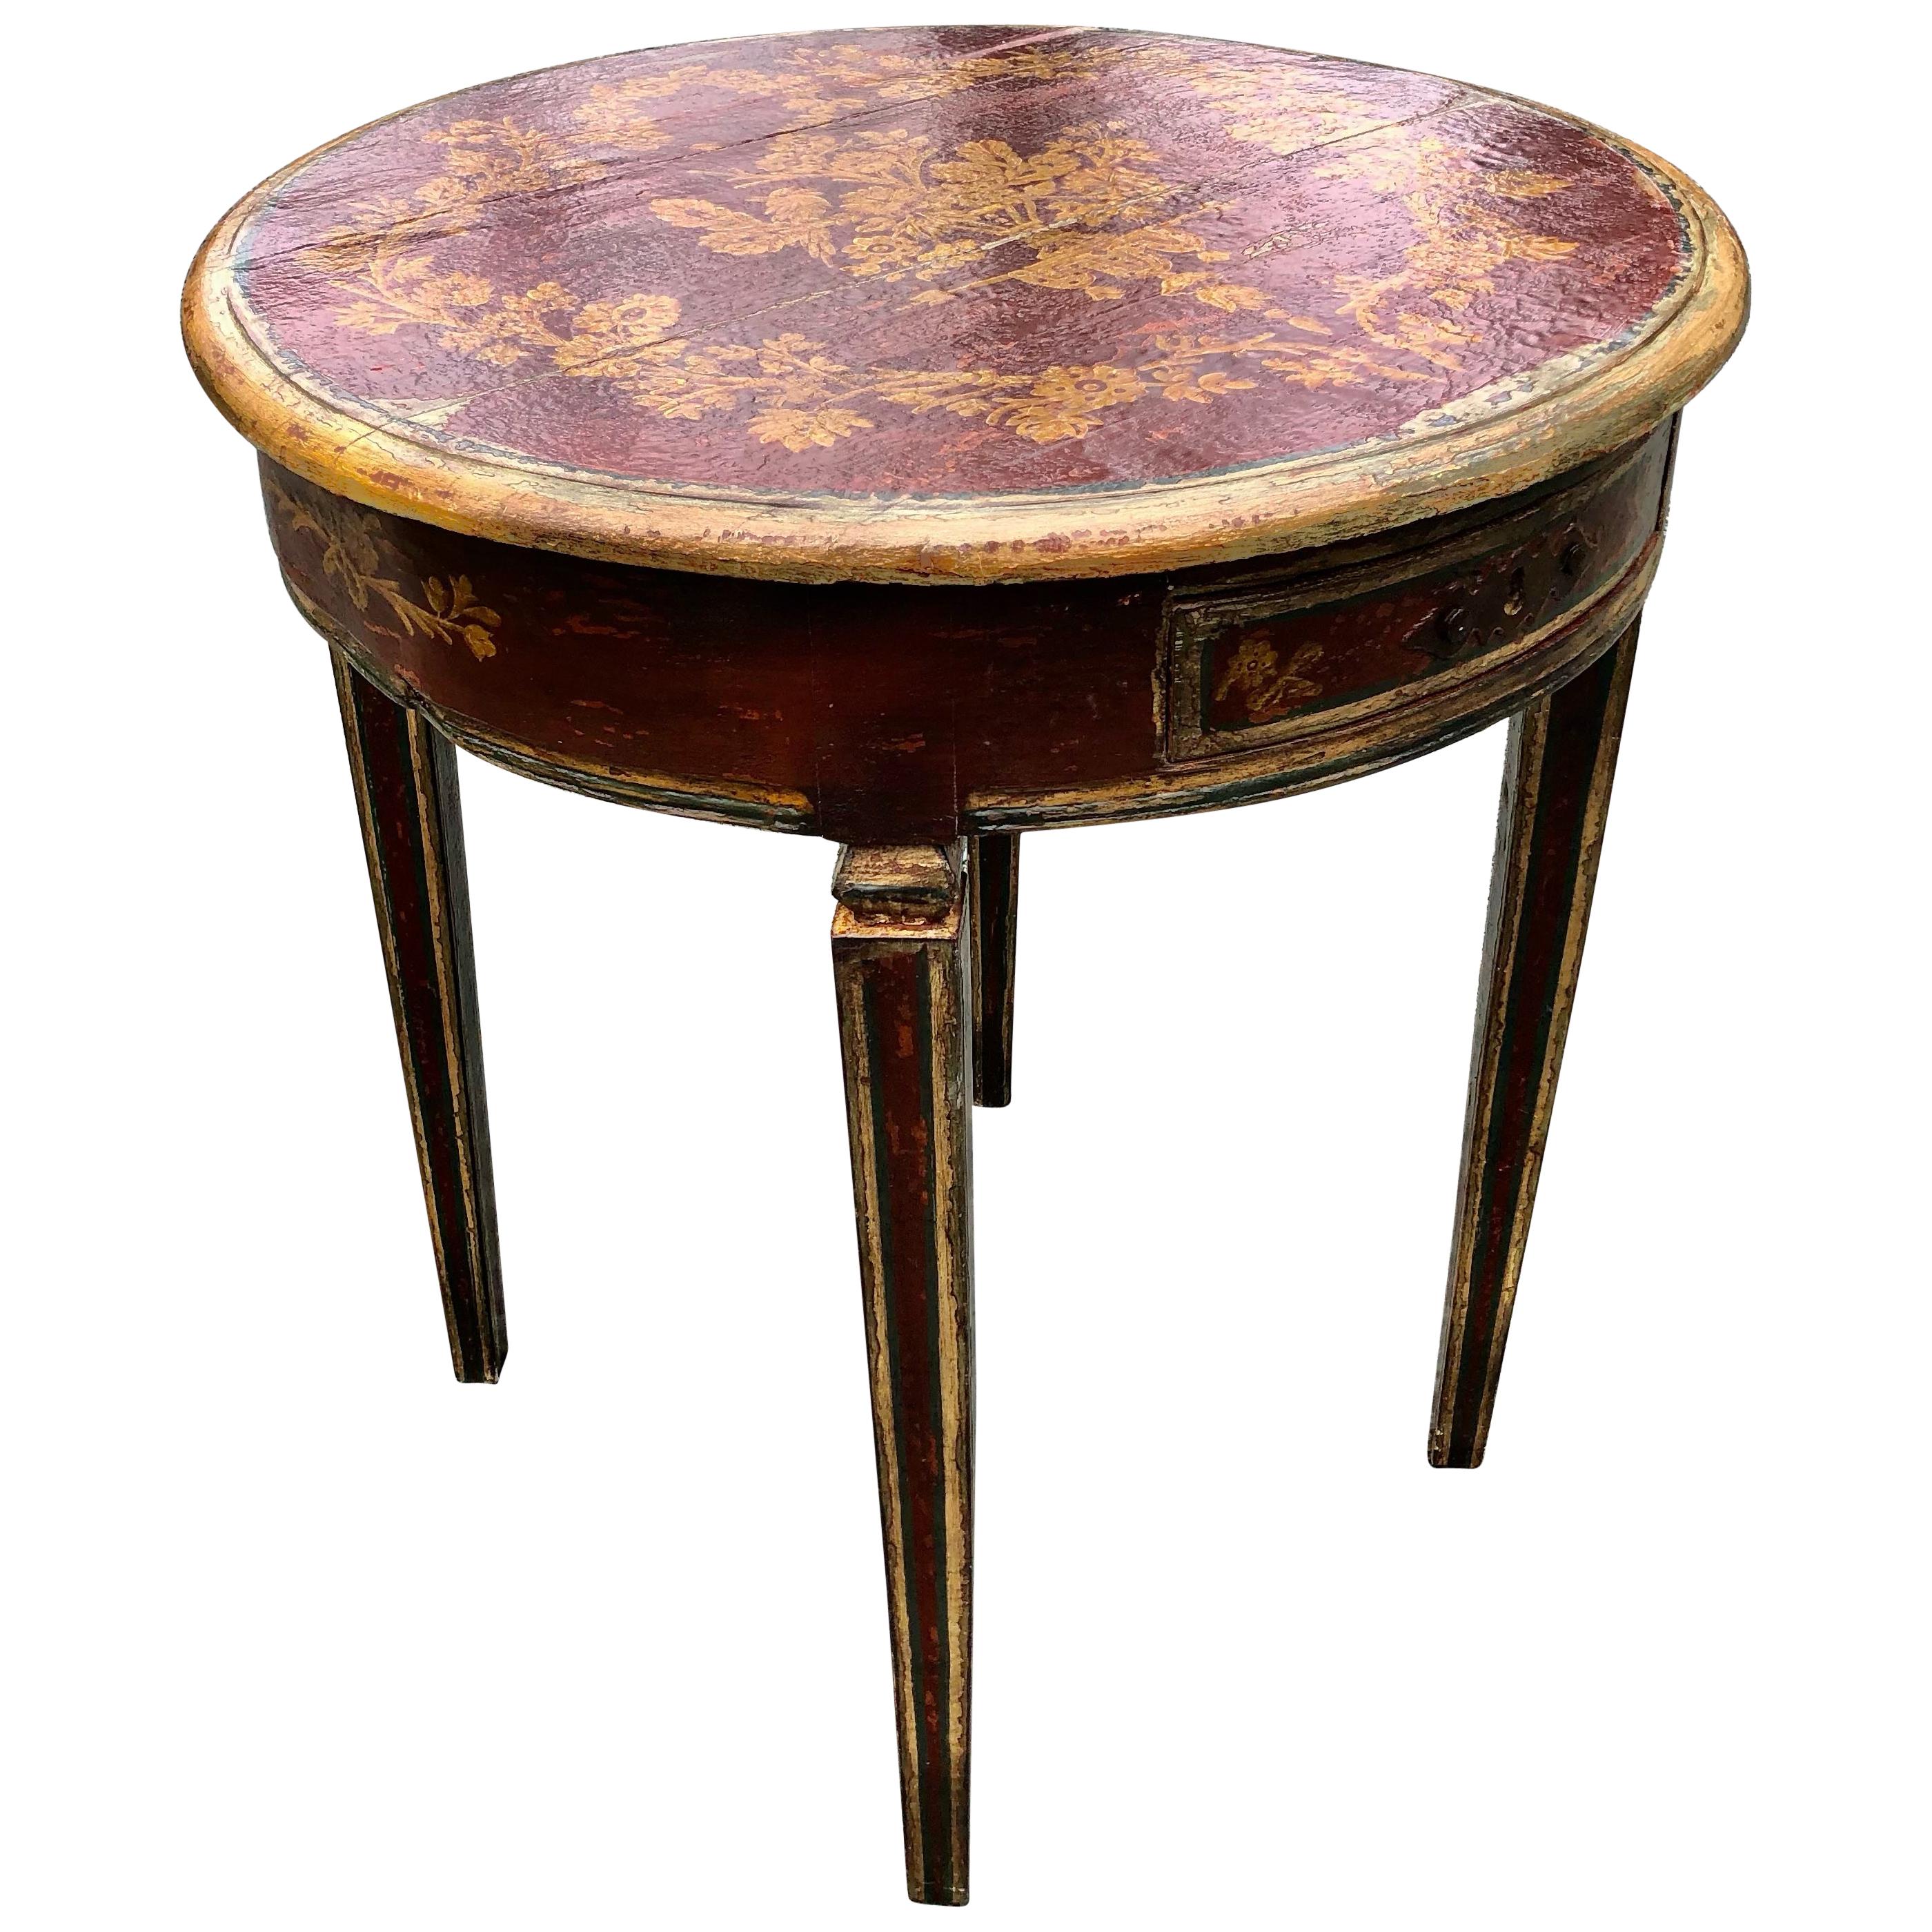 Jolie table d'appoint ronde italienne peinte et vieillie